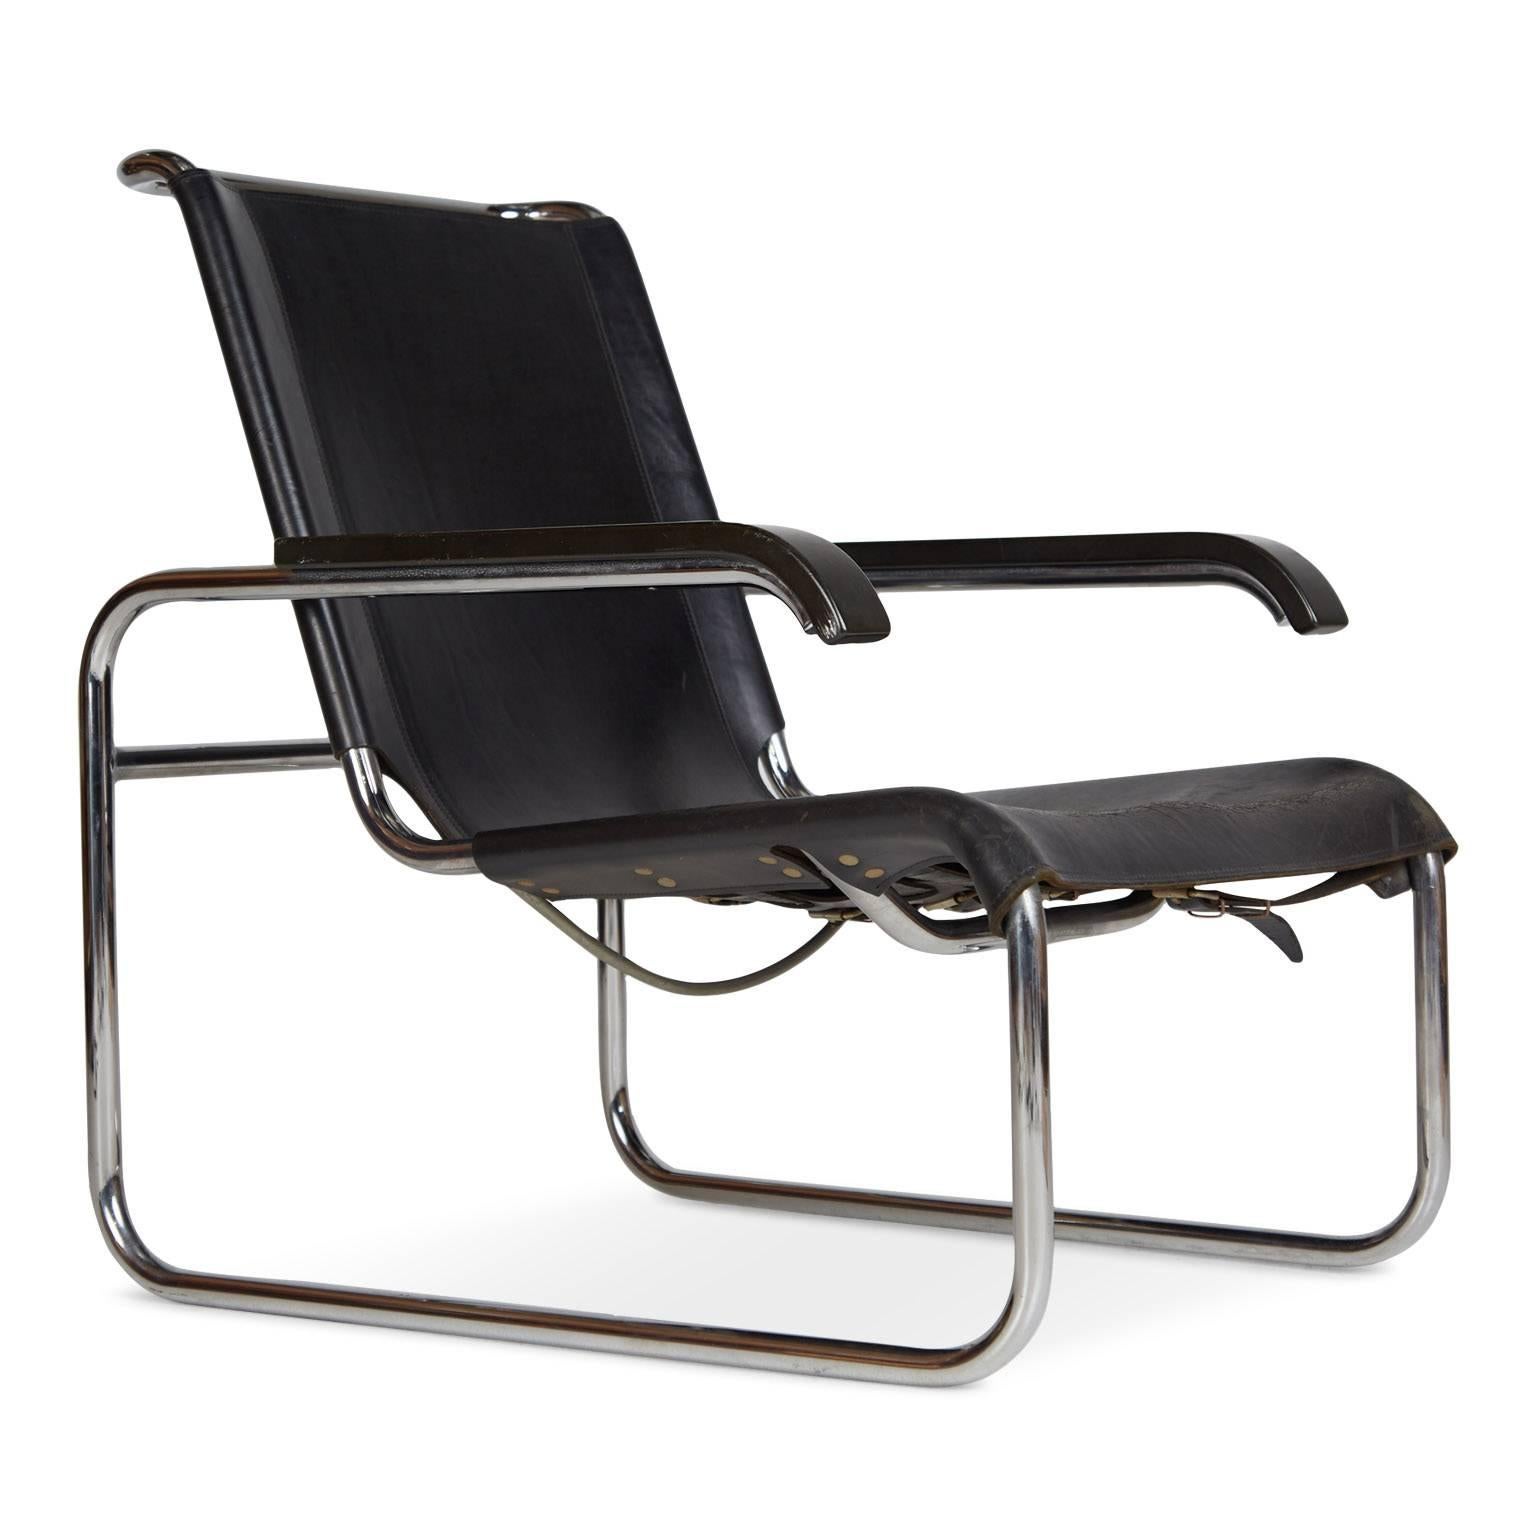 Ein Paar Thonet B35 Lounge Chairs von Marcel Breuer, um 1960 (Bauhaus)